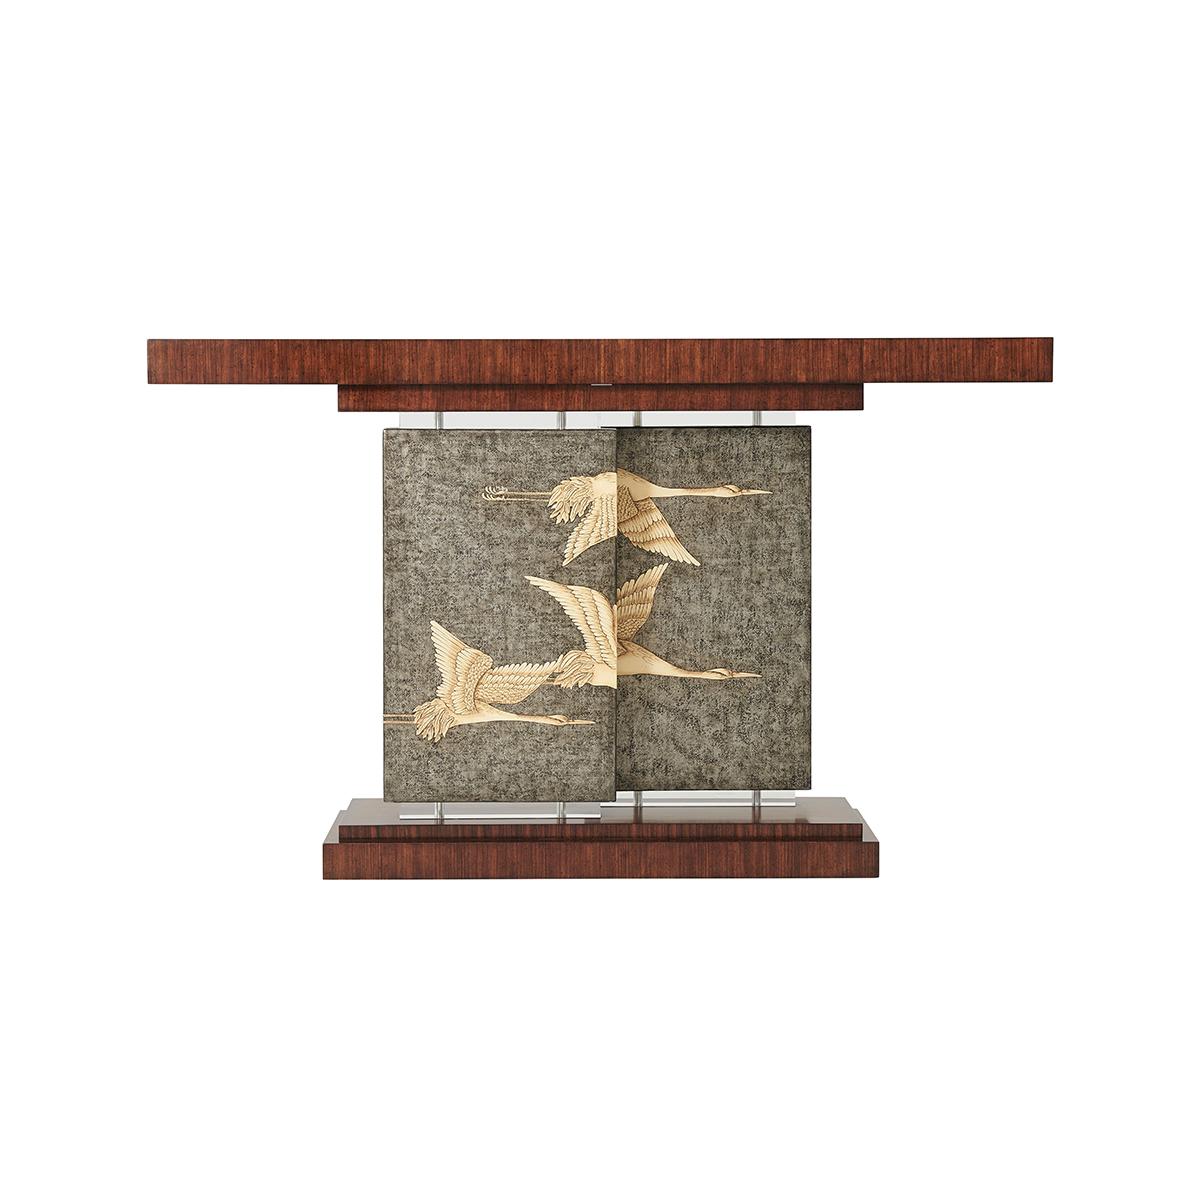 Console de style déco en placage de Hyedua, le plateau rectangulaire soutenu par deux panneaux décalés en Argento étain peints à la main avec des grues volantes et des bases et chapiteaux en acrylique, sur un socle à gradins.

Dimensions : 60